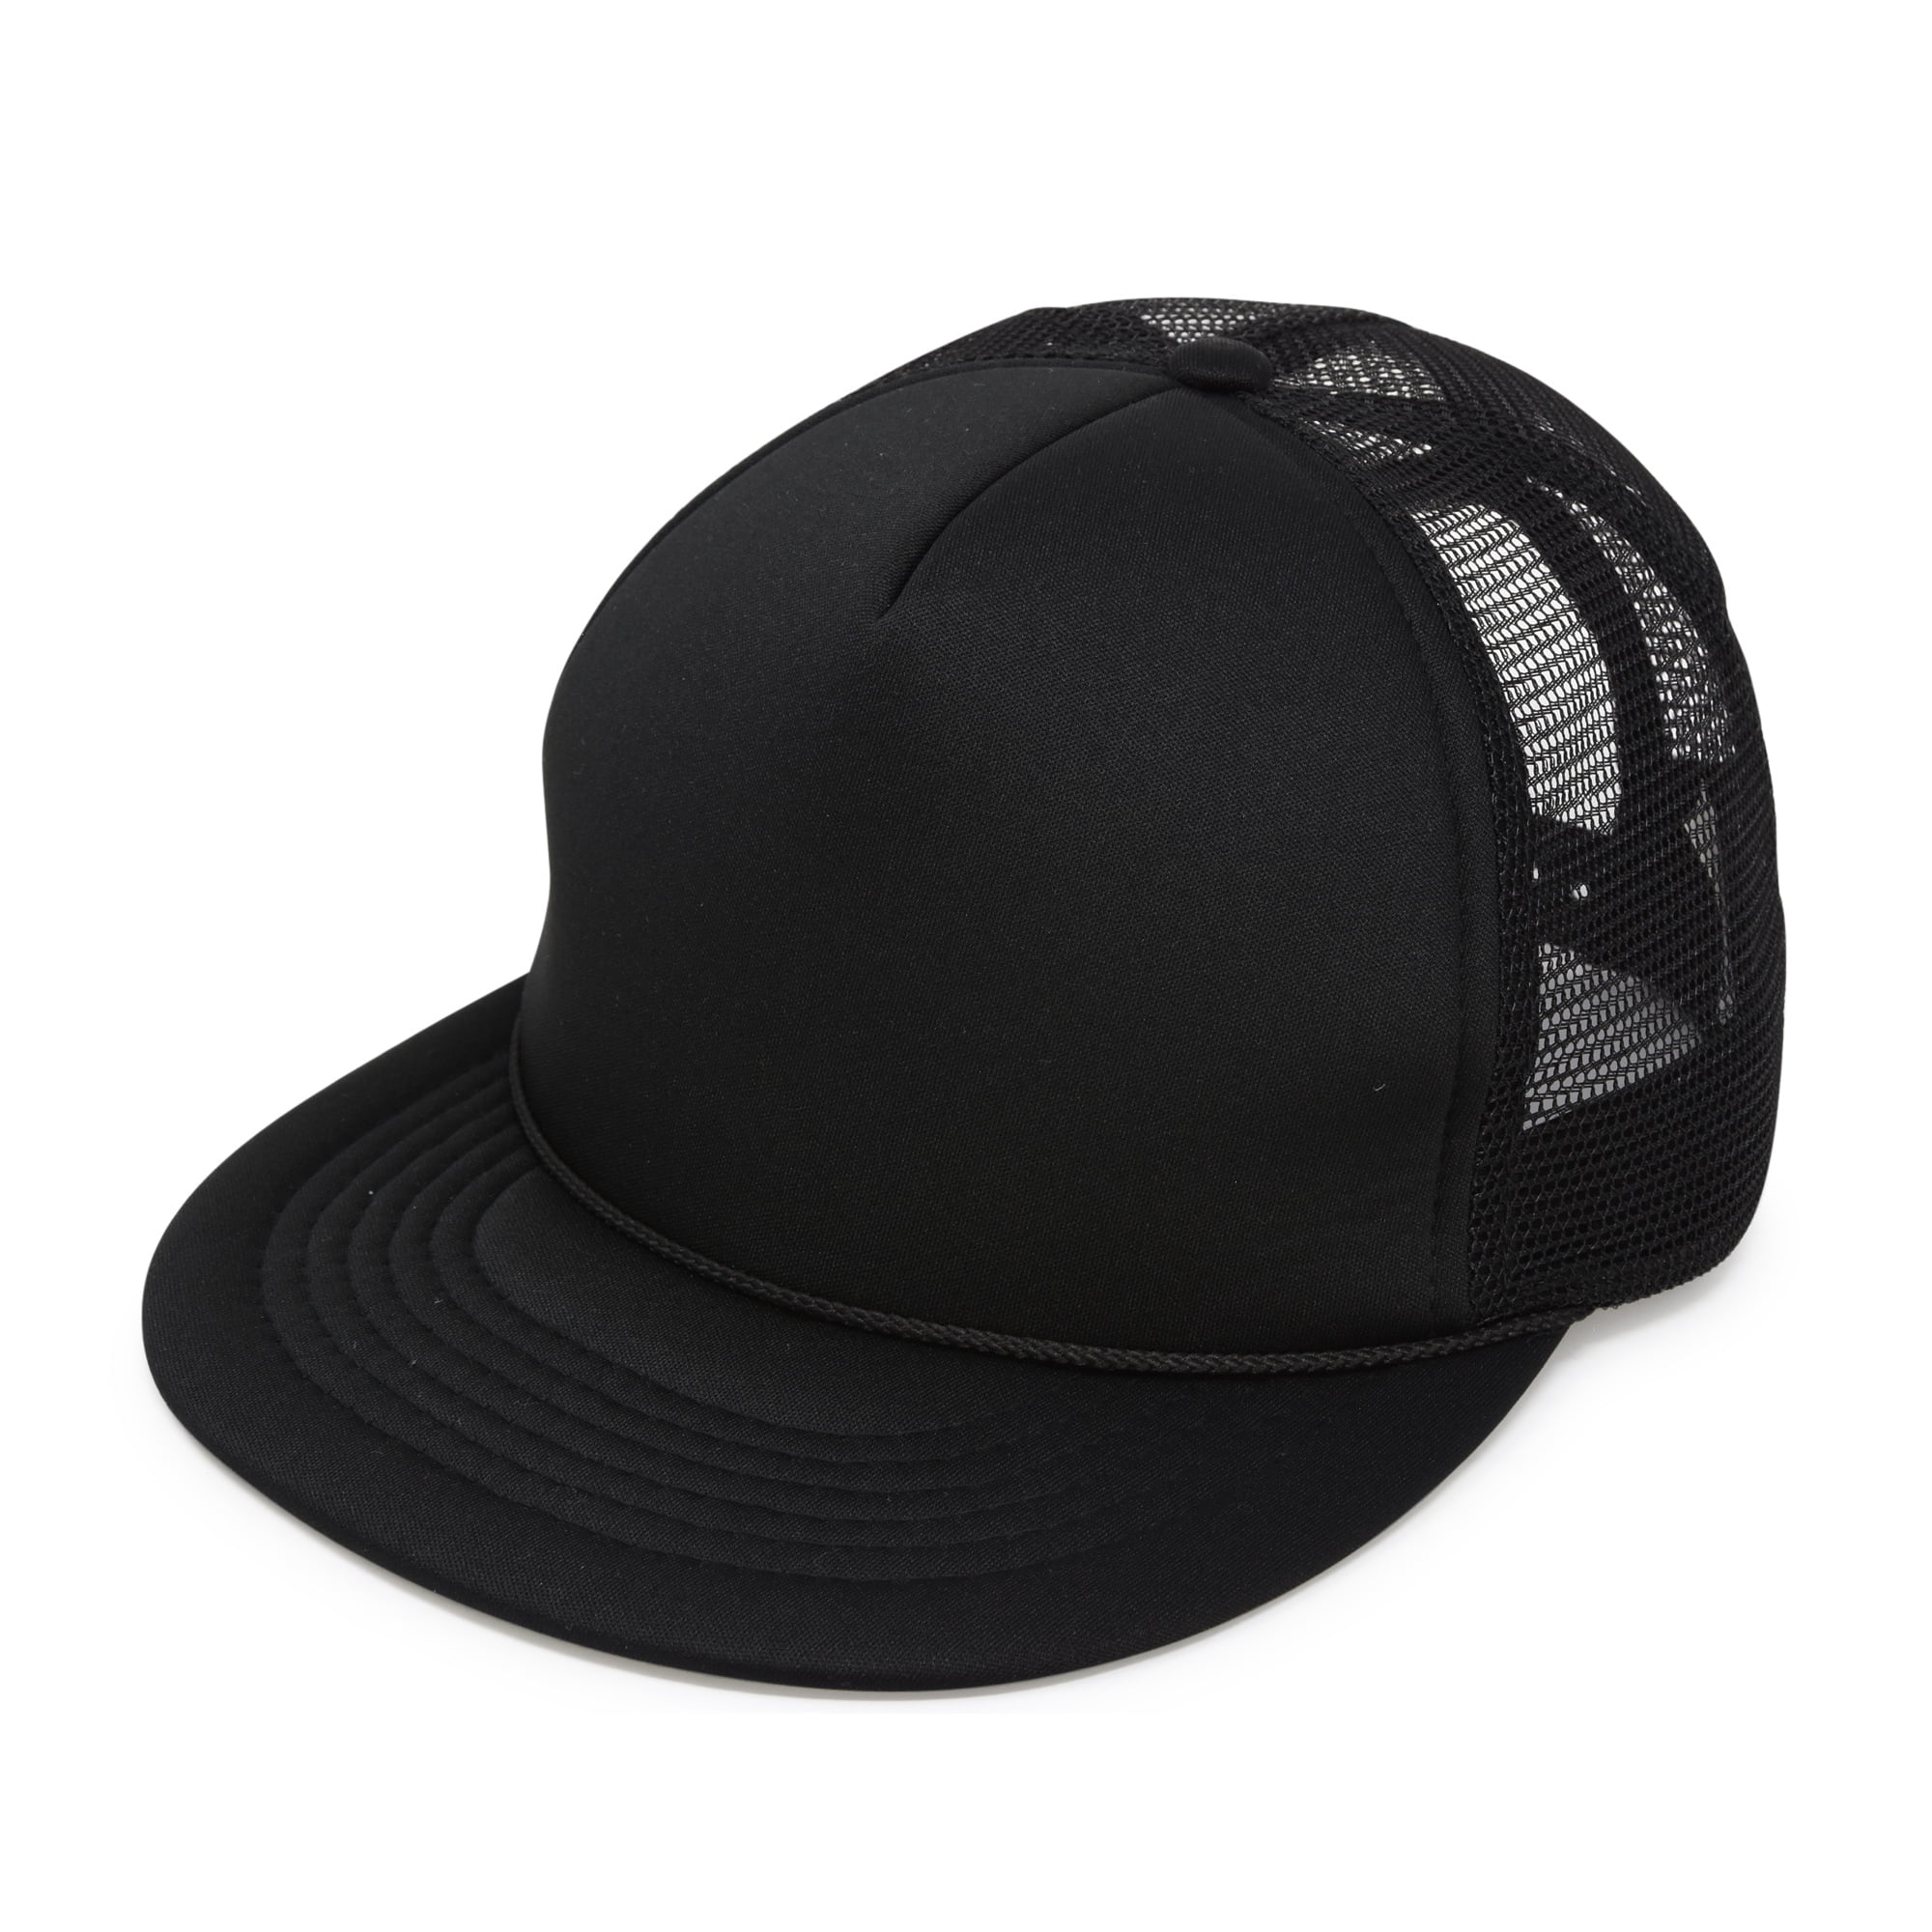 Black Blessed Hip Hop Adjustable Dad Hat Cap Strapback Snapback 